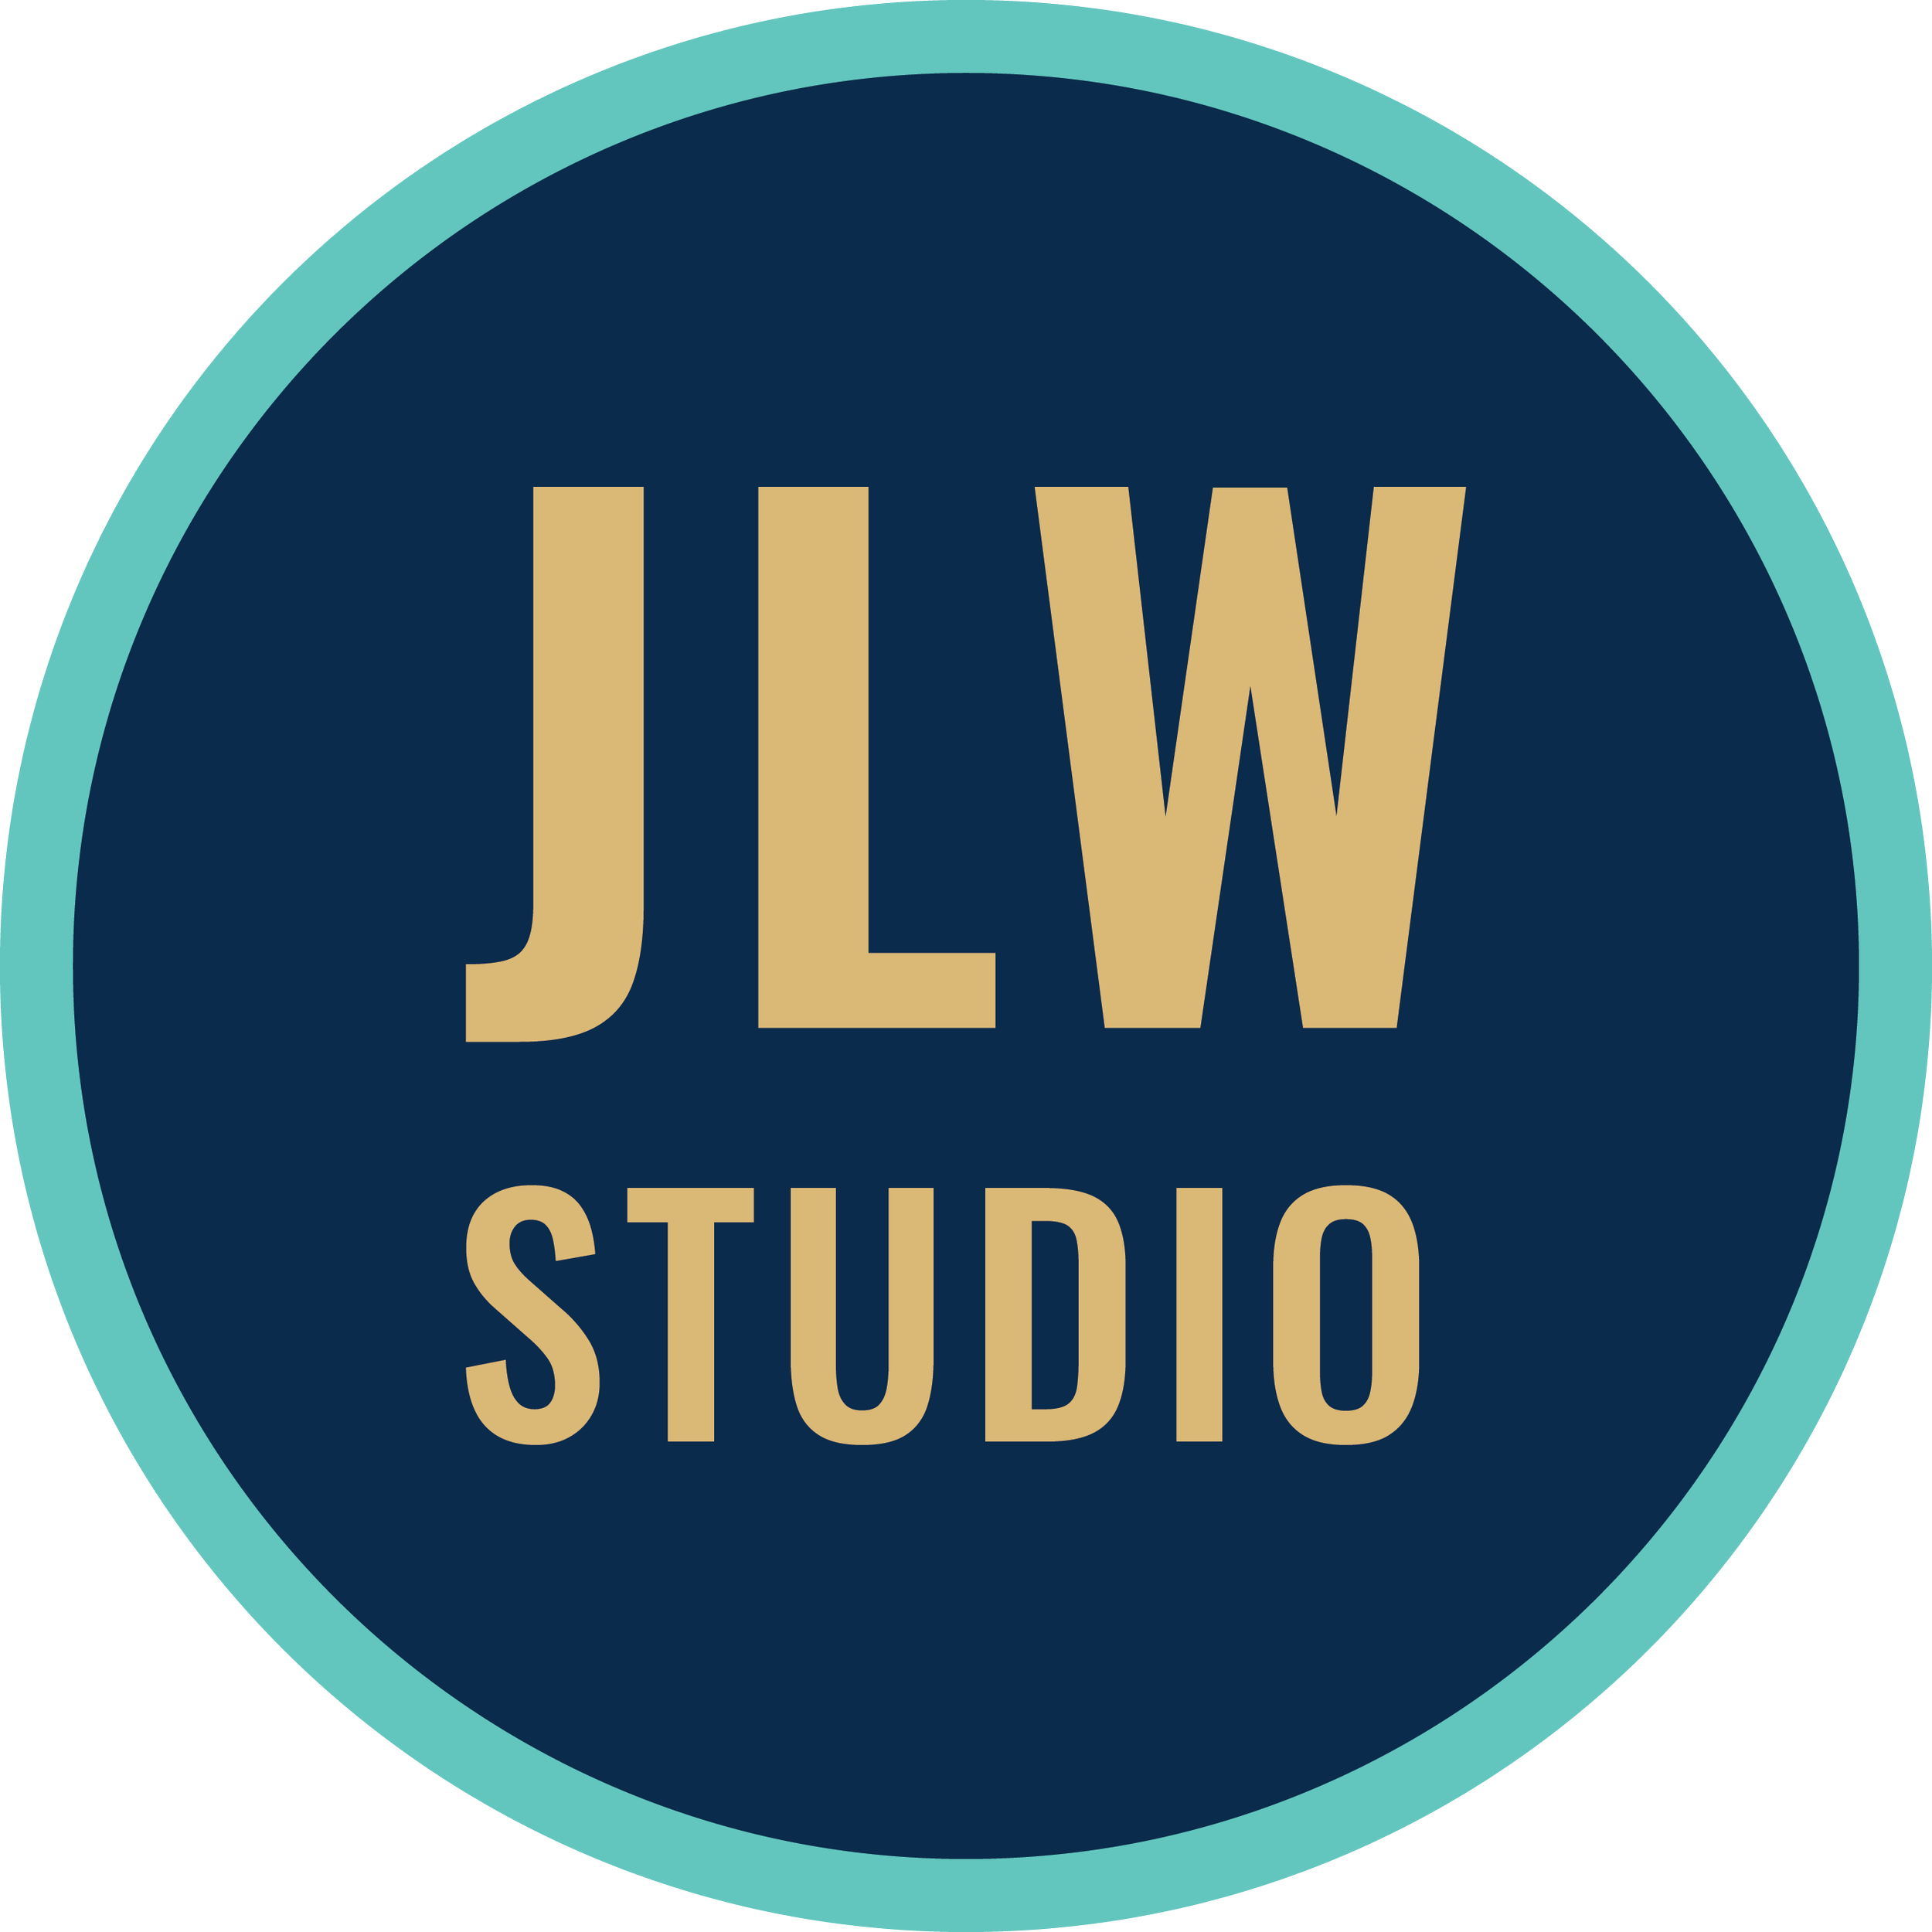 Jessie Workman Physiotherapy JLW Studio